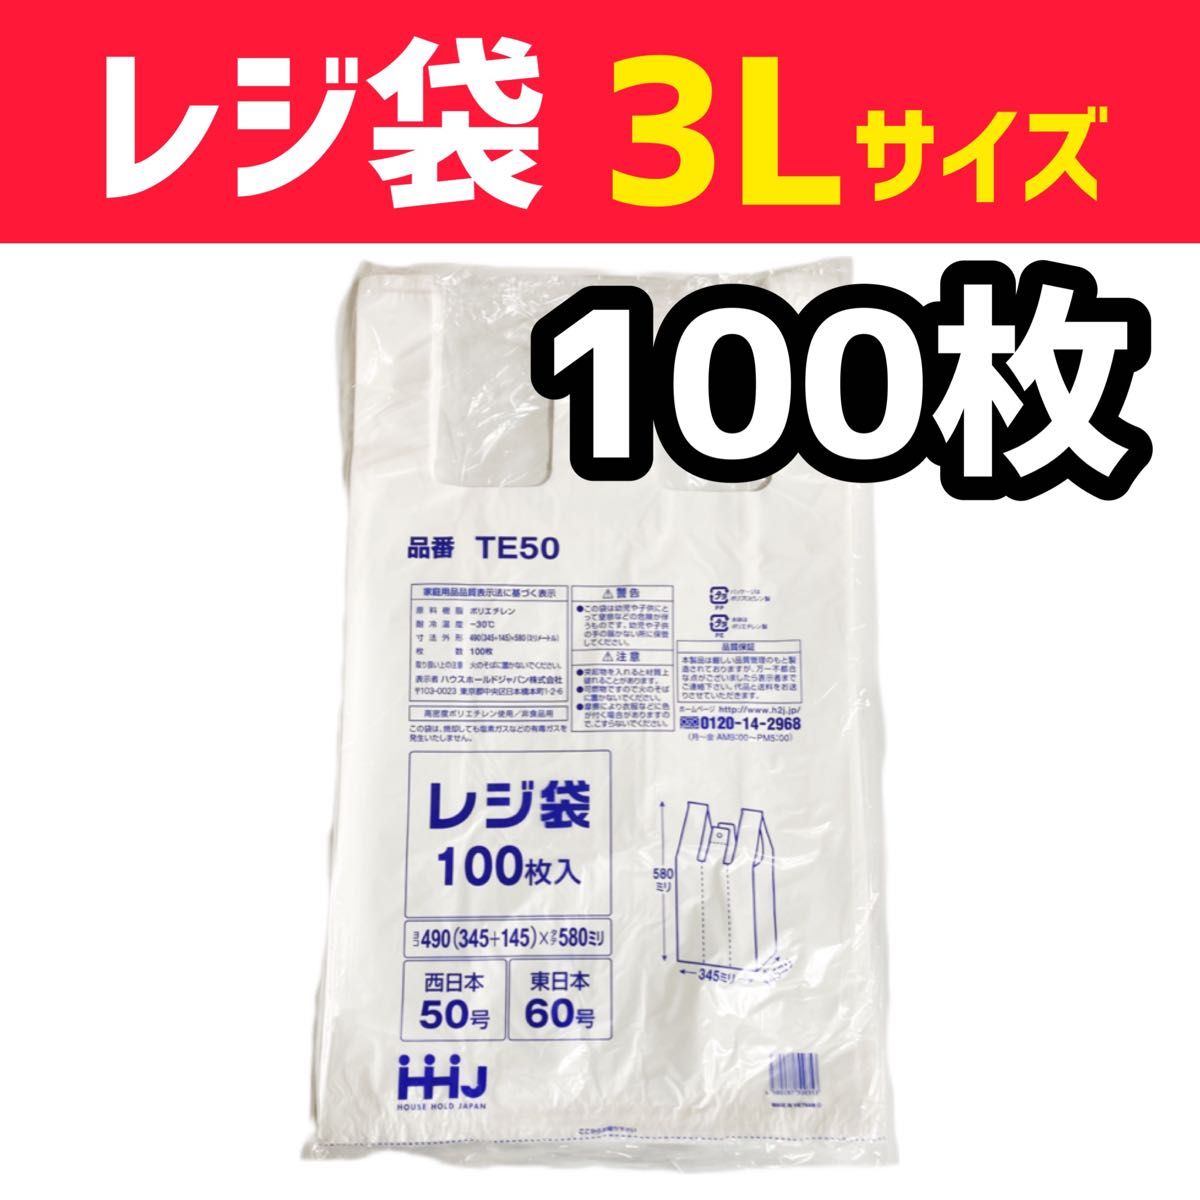 レジ袋 3L 100枚 乳白色 無地 エコバッグ 手提げ袋 買い物袋 スーパーの袋 ビニール袋 ポリ袋 ゴミ袋 TE50